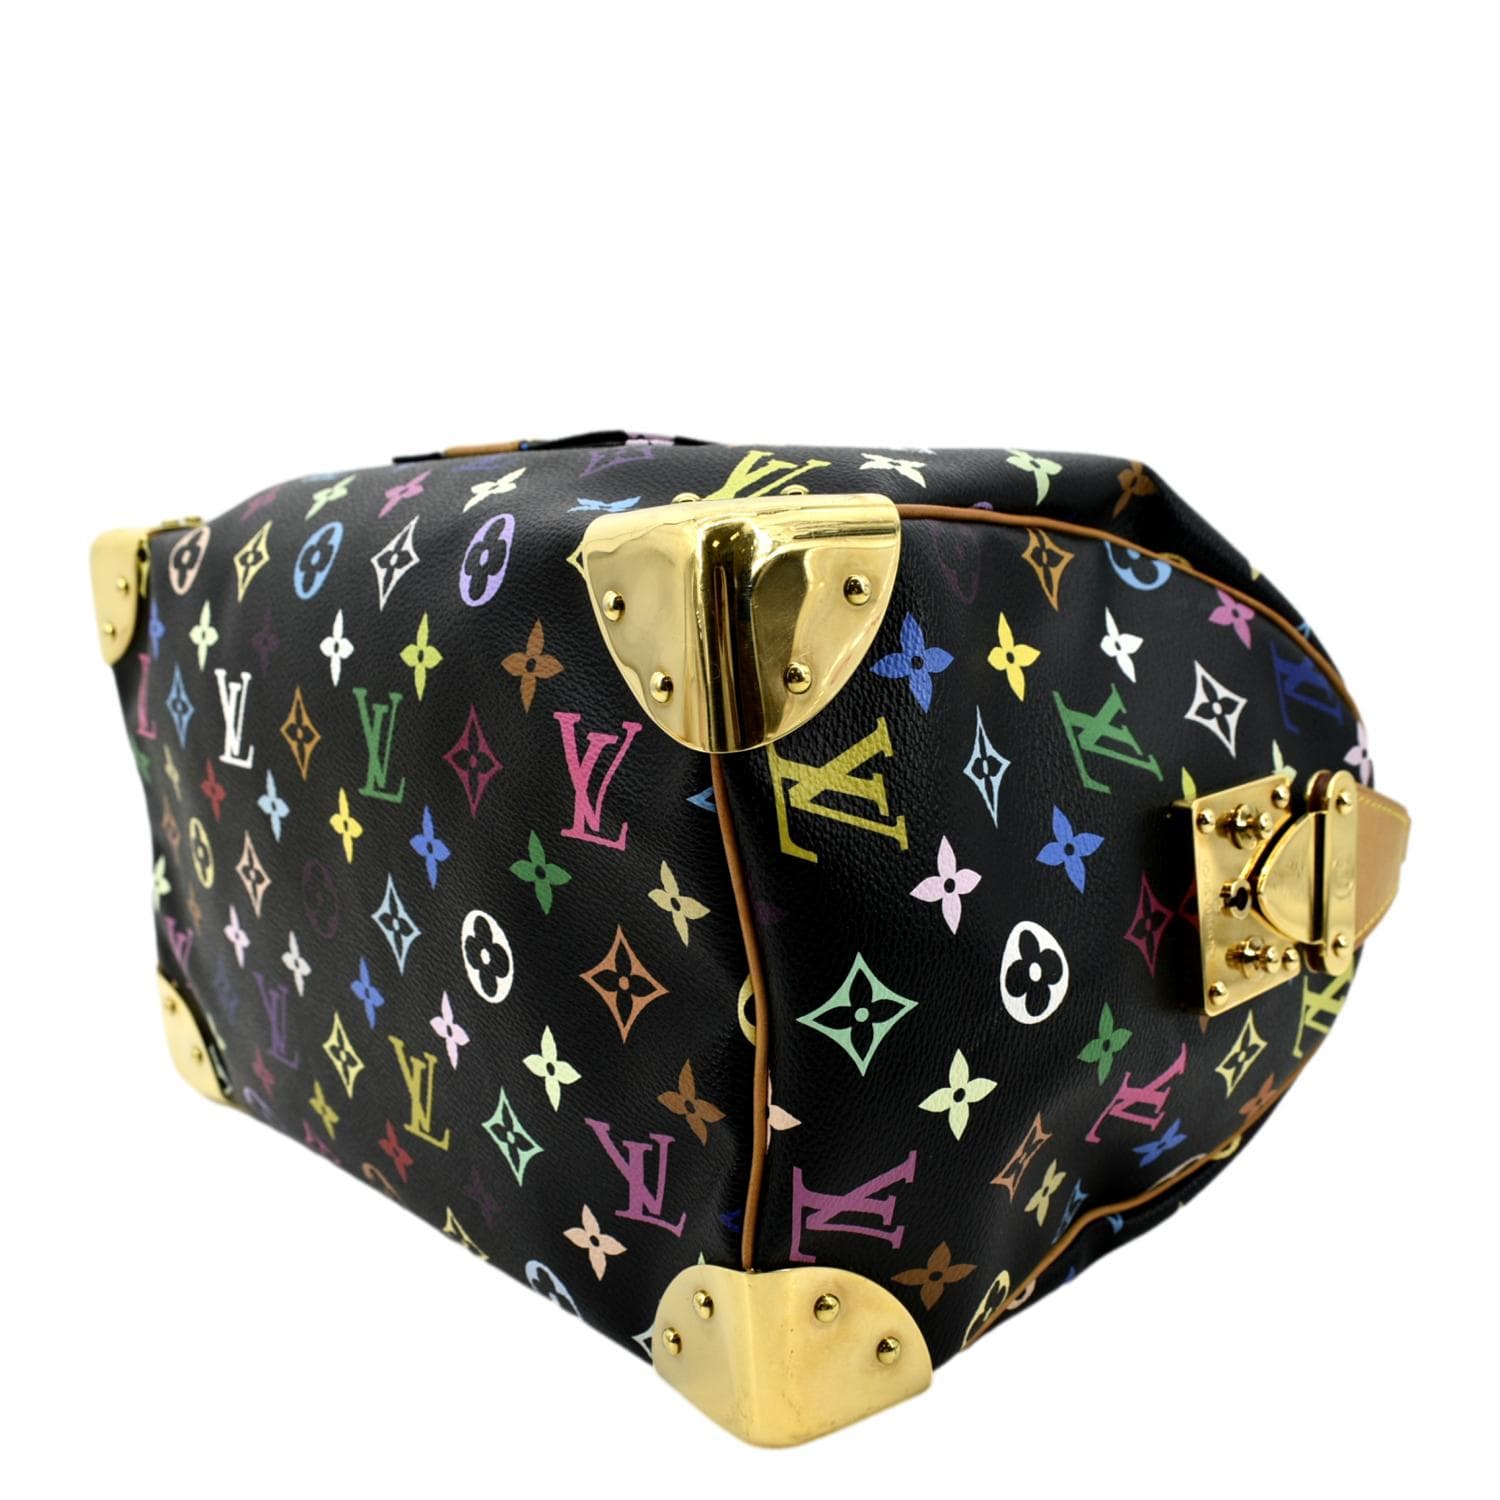 Authenticated used Louis Vuitton Monogram Multicolor Speedy 30 Noir M92642 Handbag, Adult Unisex, Size: (HxWxD): 21cm x 31cm x 17.5cm / 8.26'' x 12.2